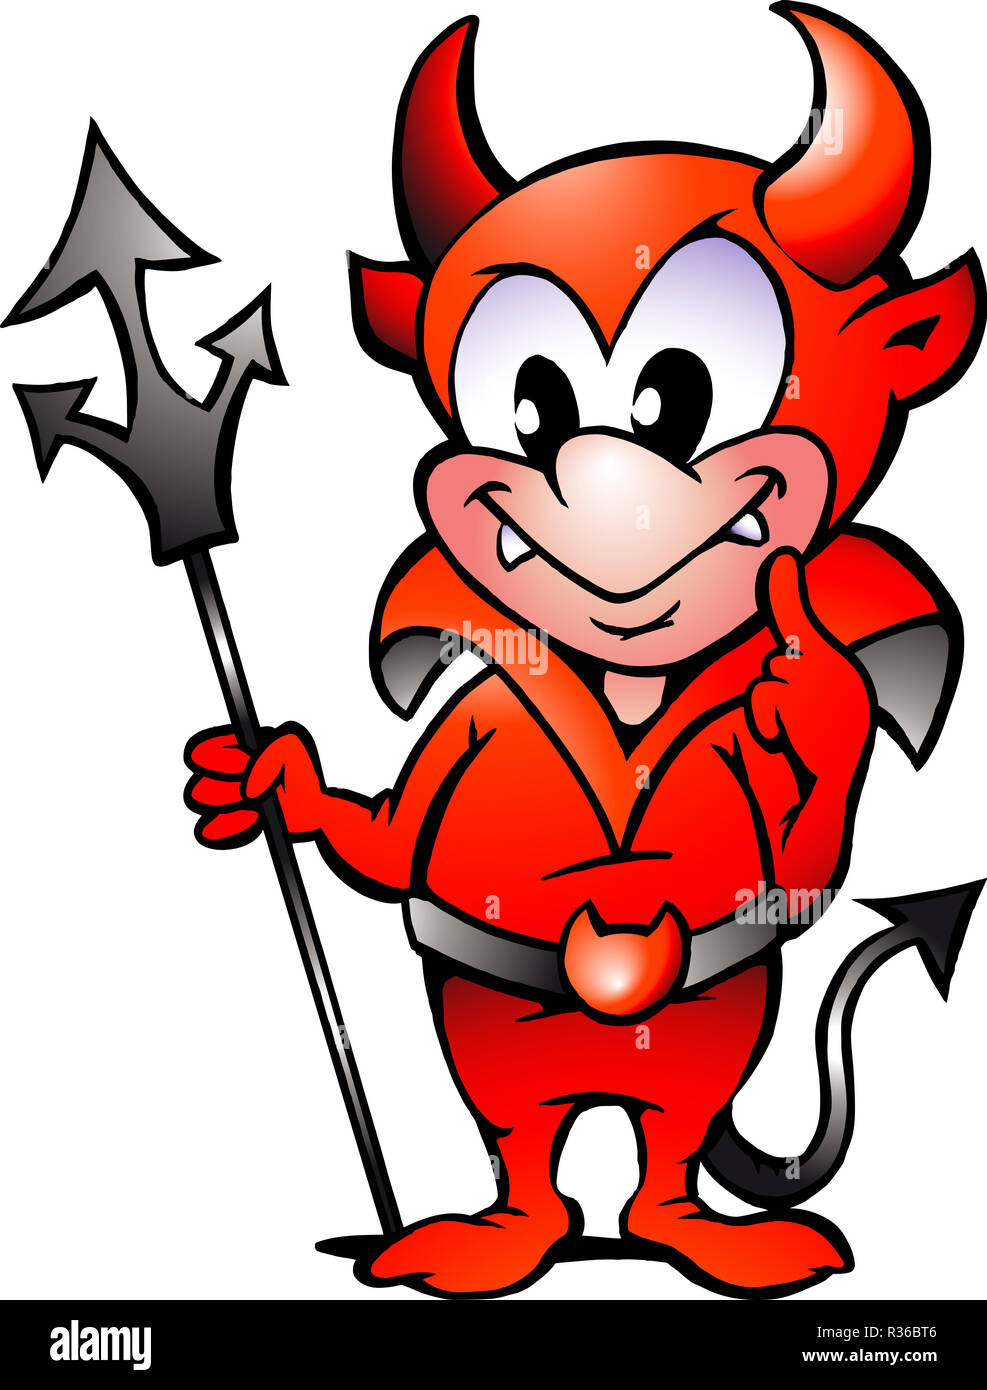 Vector illustration dessinée à la main d'un petit diable rouge garçon Banque D'Images